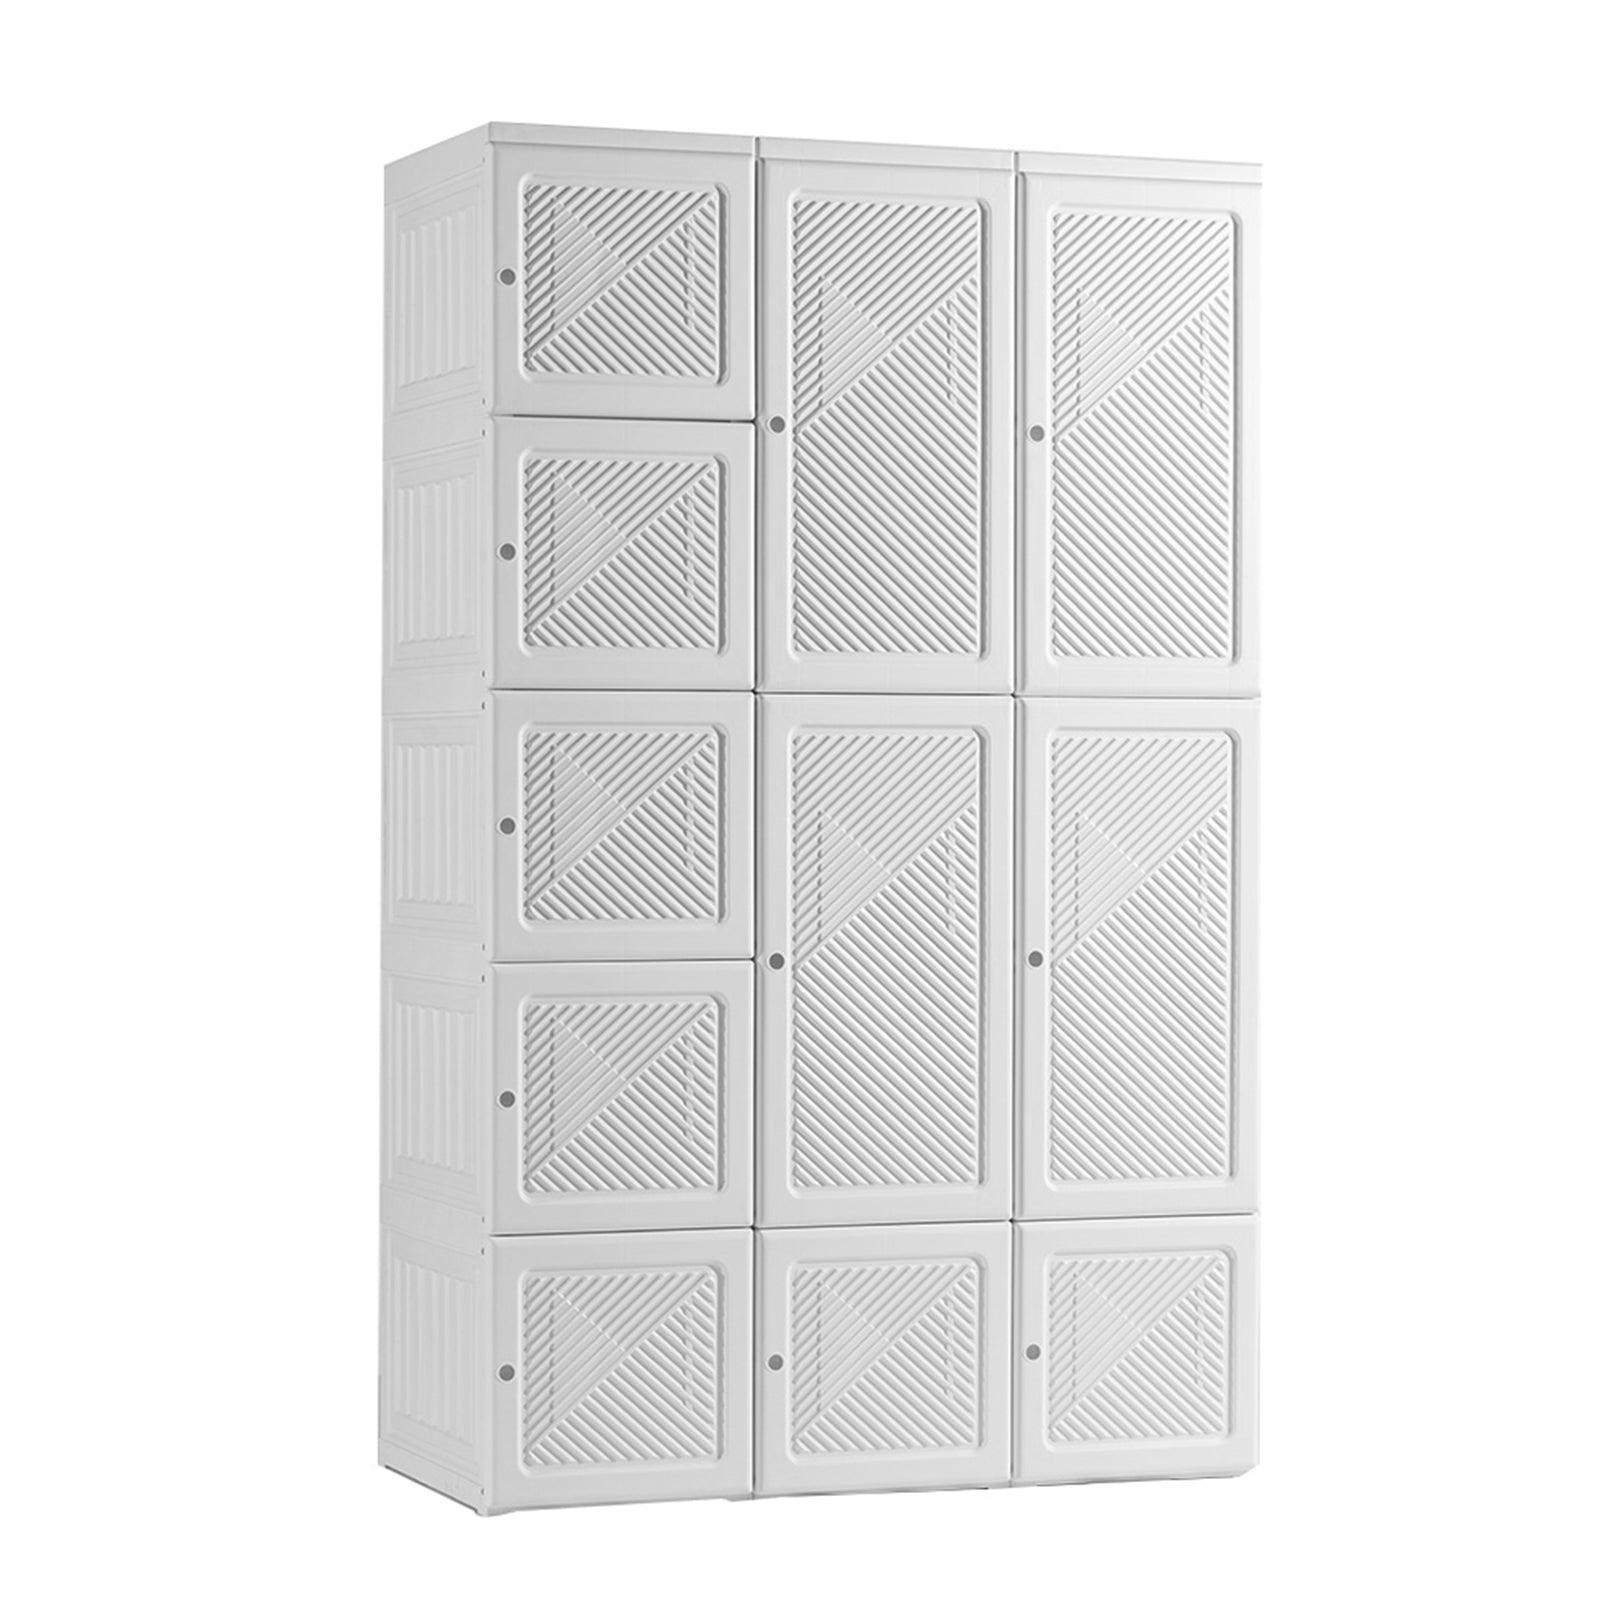 🆓🚛 Portable Wardrobe Closet Storage Organizer, White Closet & White Doors